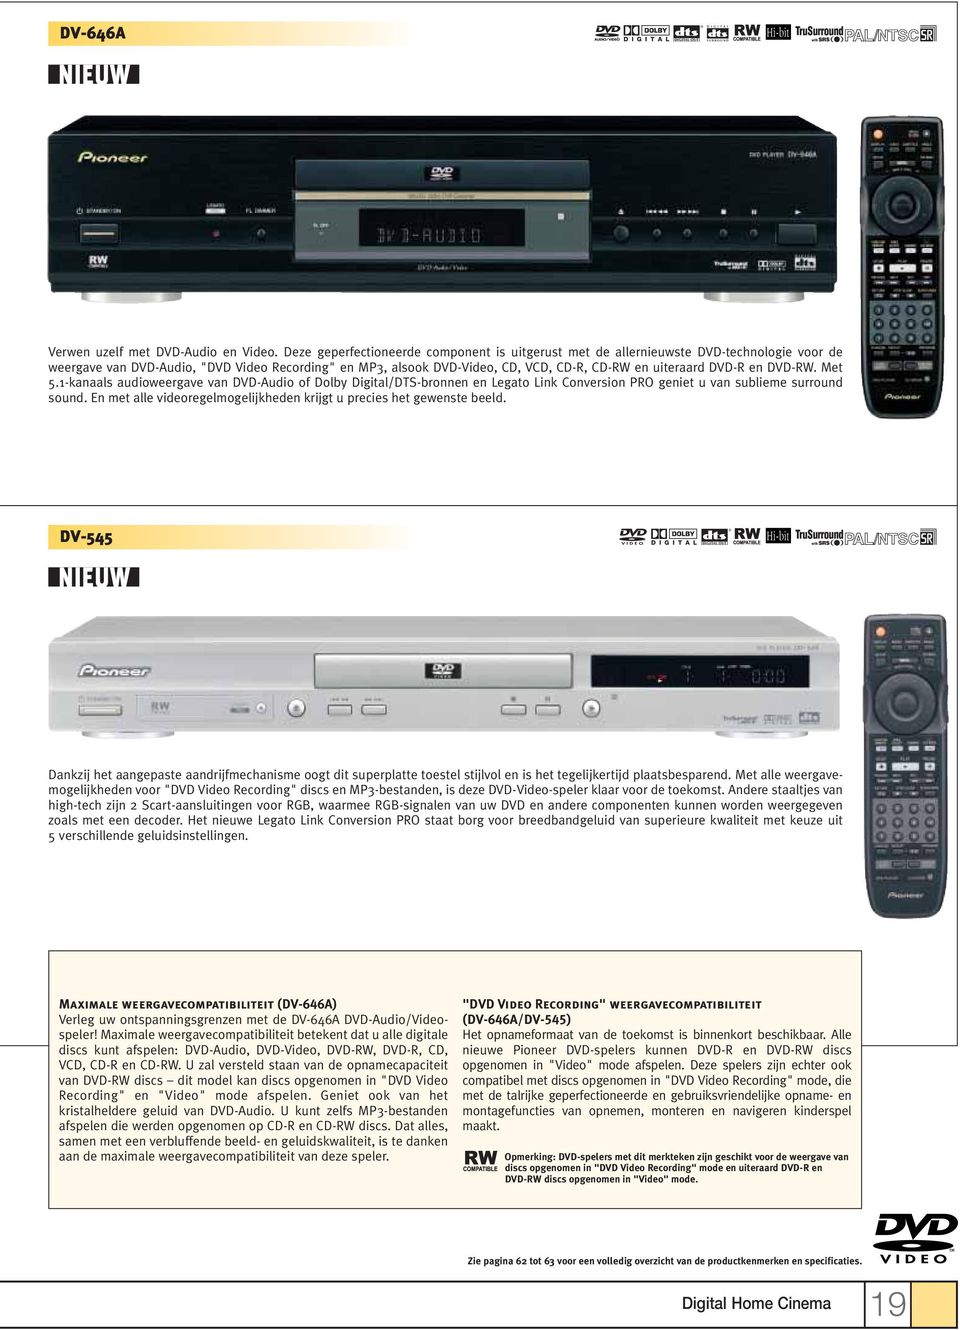 DVD-R en DVD-RW. Met 5.1-kanaals audioweergave van DVD-Audio of Dolby Digital/DTS-bronnen en Legato Link Conversion PRO geniet u van sublieme surround sound.